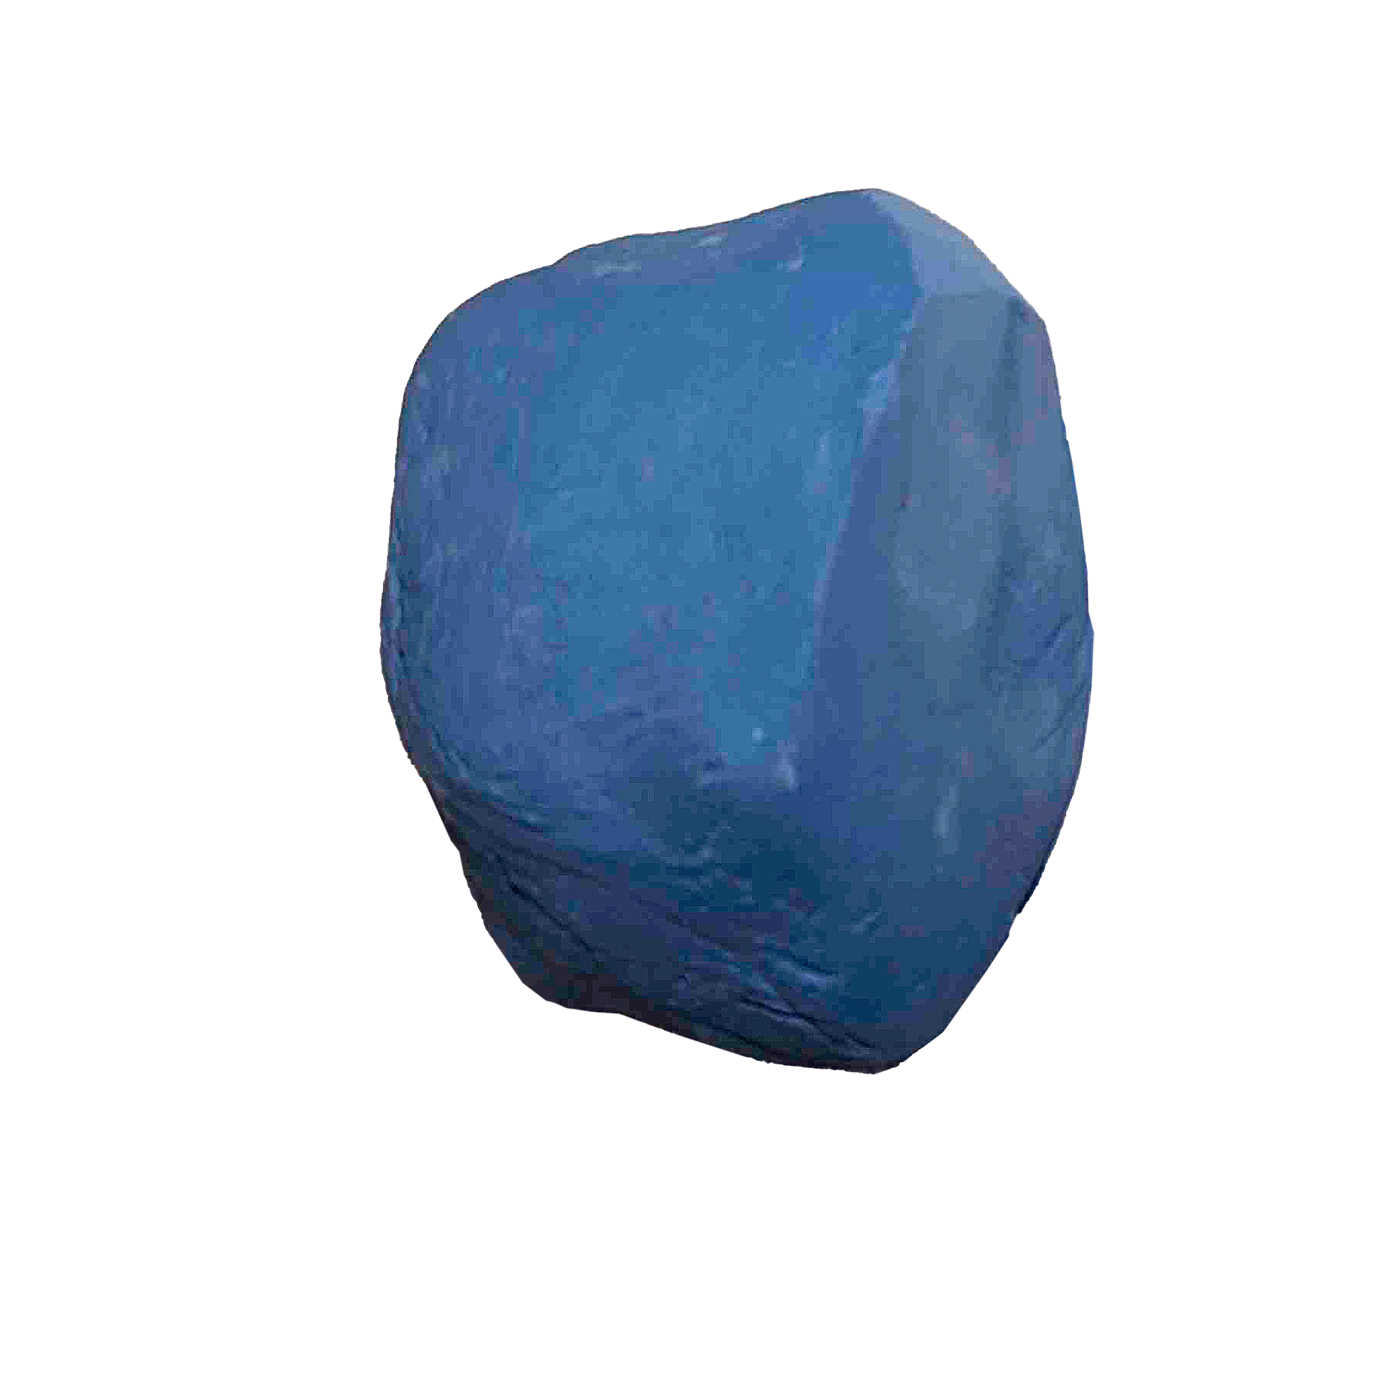 Ritsten – Lapis Lazuli (Afghan)